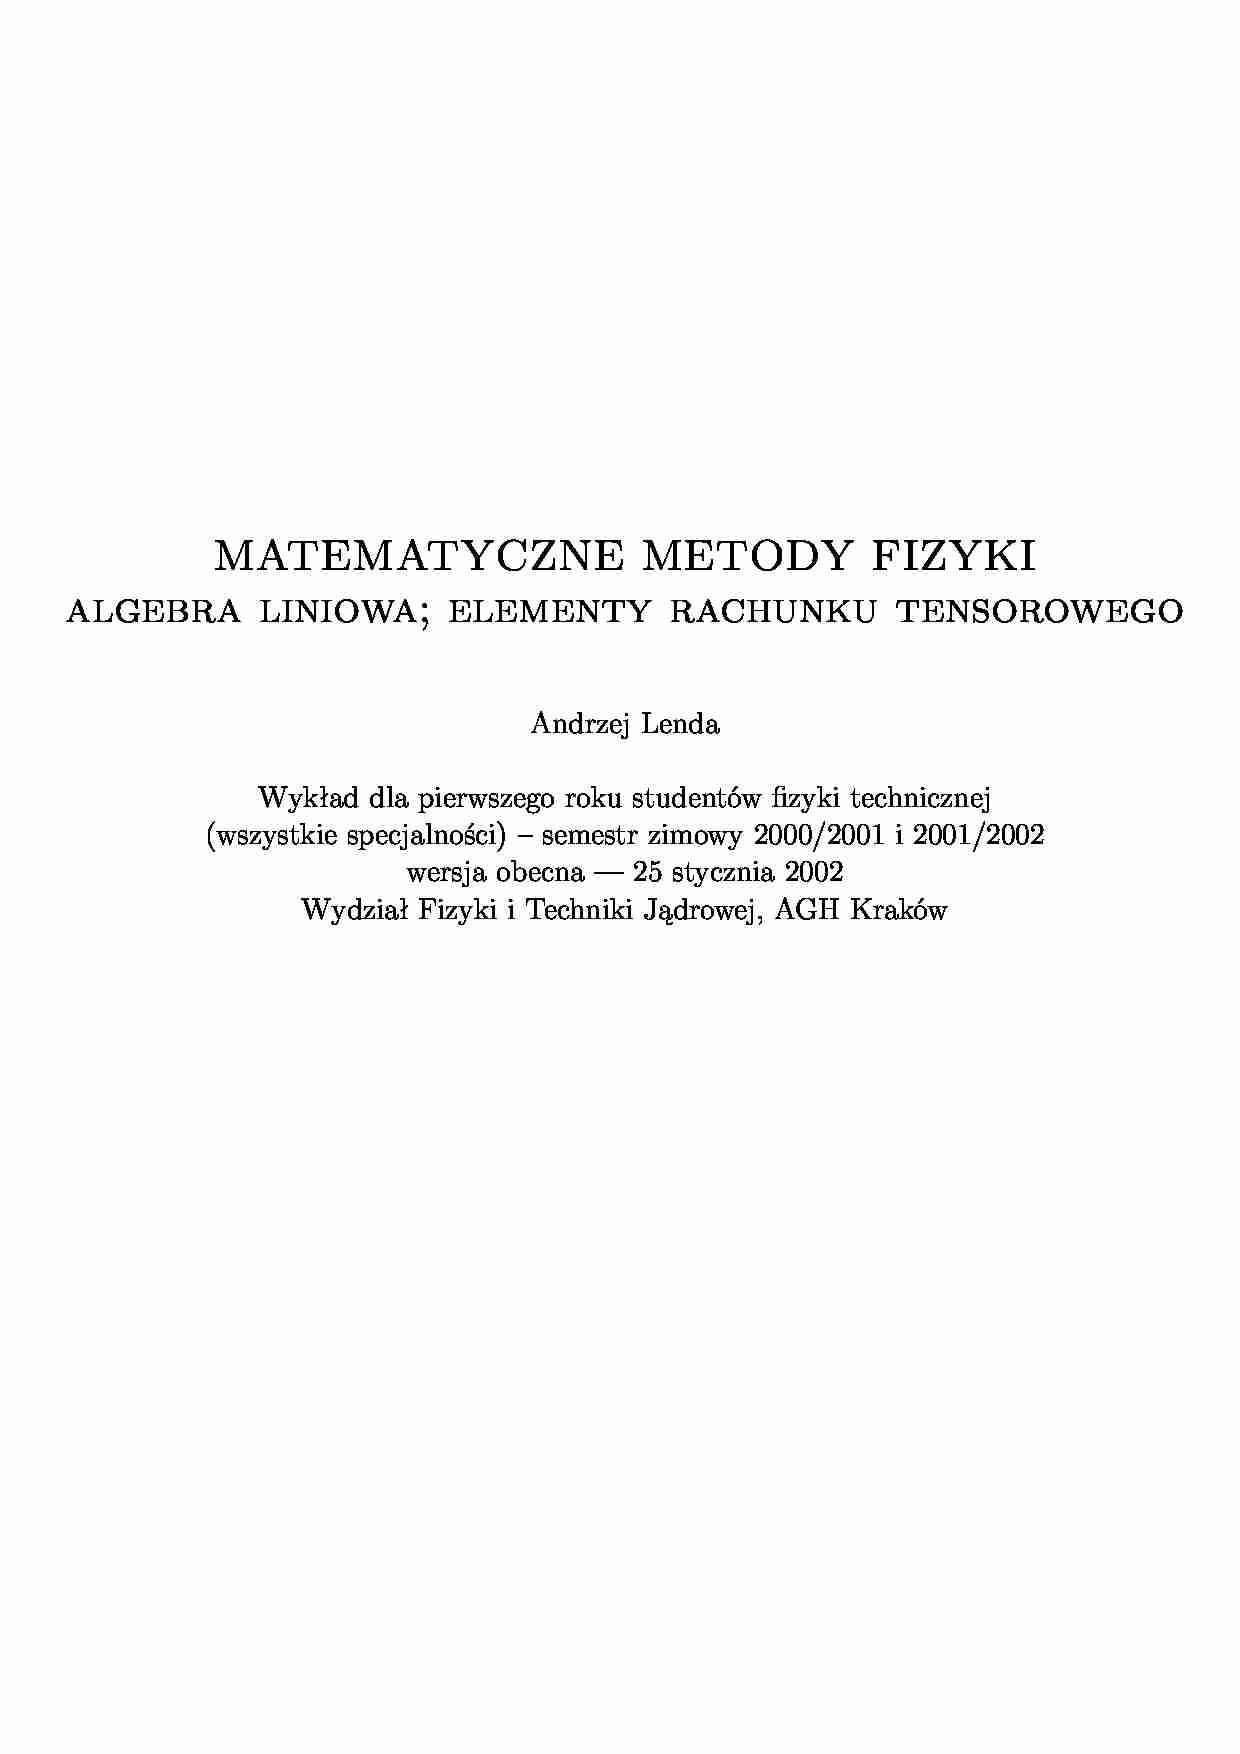 matematyczne metody fizyki wykład - strona 1